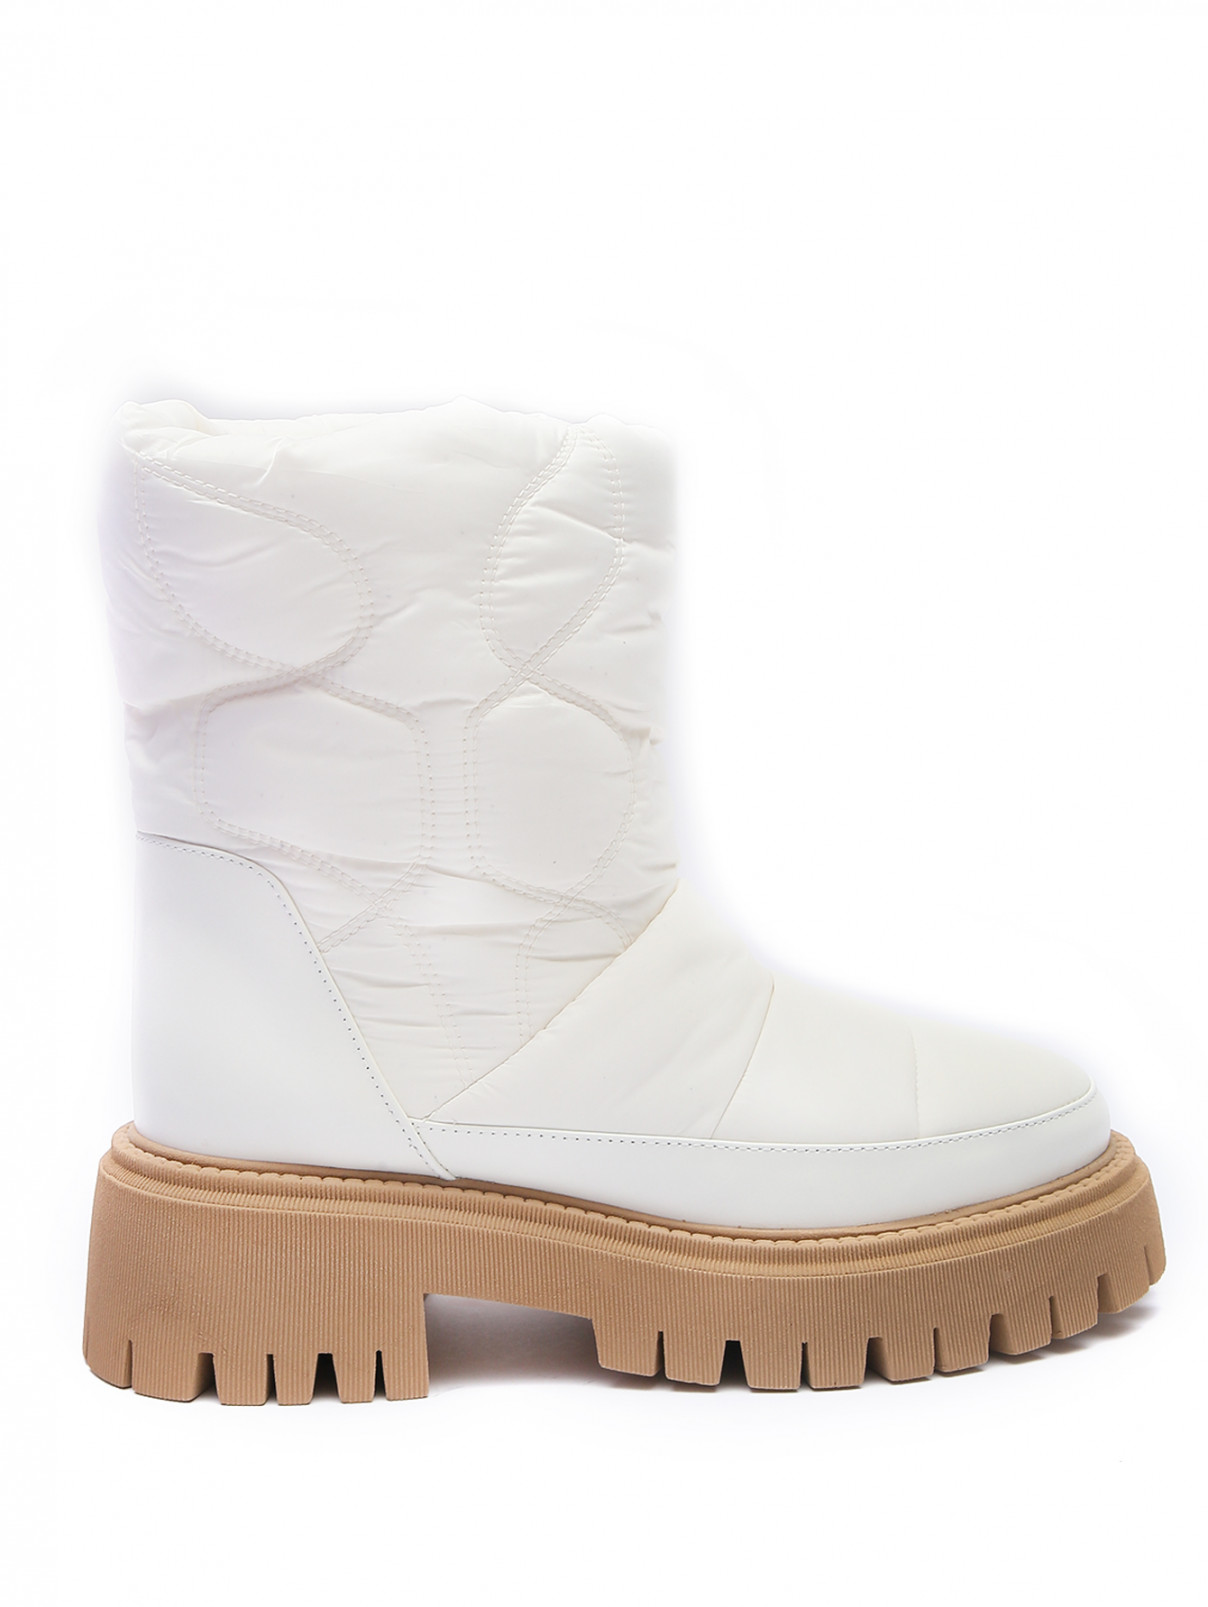 Комбинированные ботинки из текстиля и кожи Dorothee Schumacher  –  Обтравка1  – Цвет:  Белый